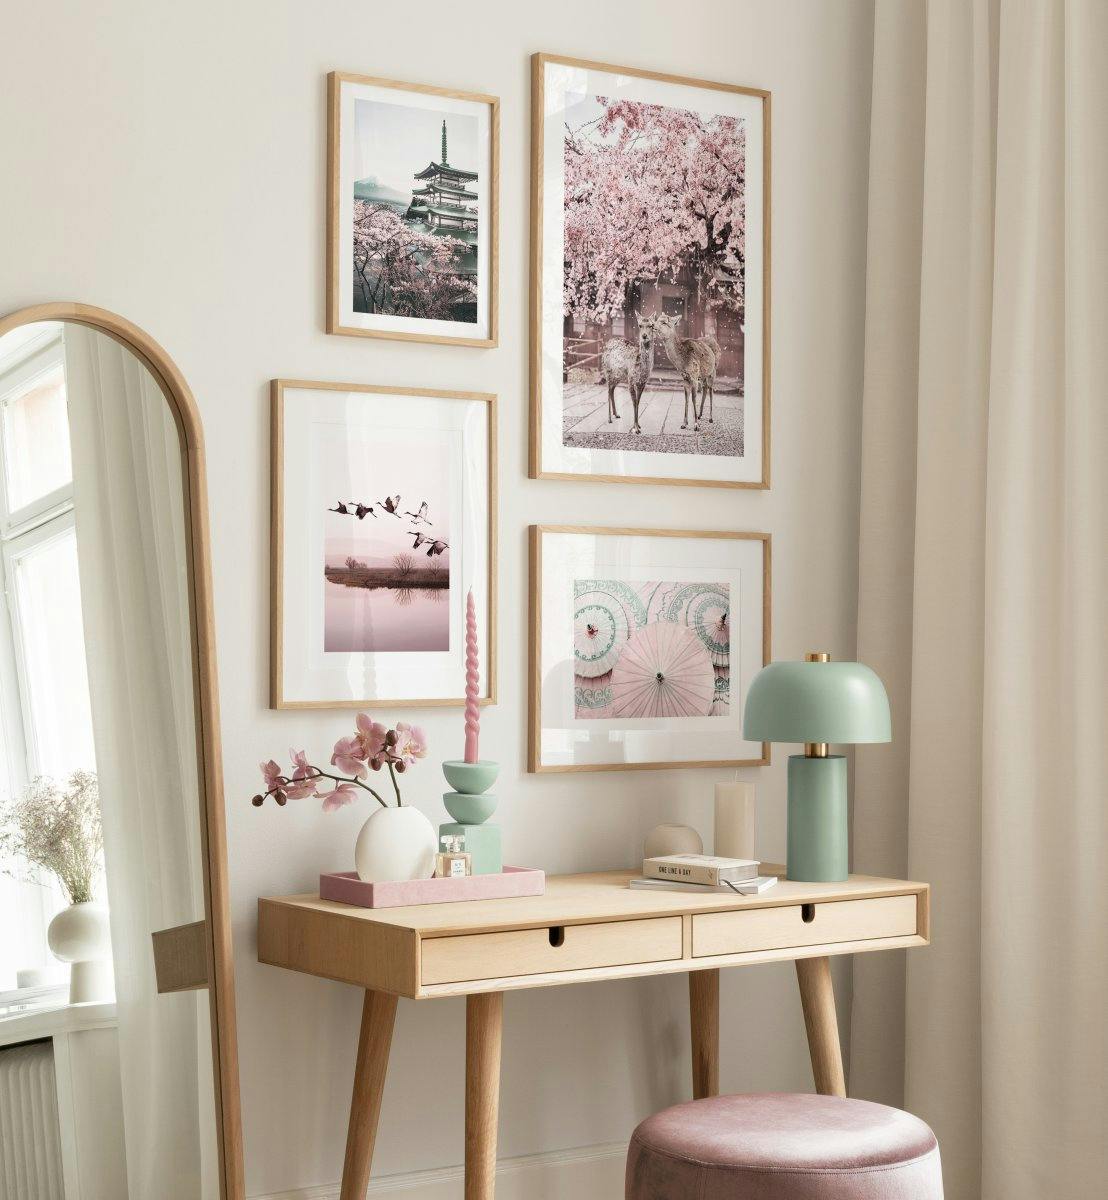 Rosa naturposters och fotografisk konst till vardagsrum eller kontor